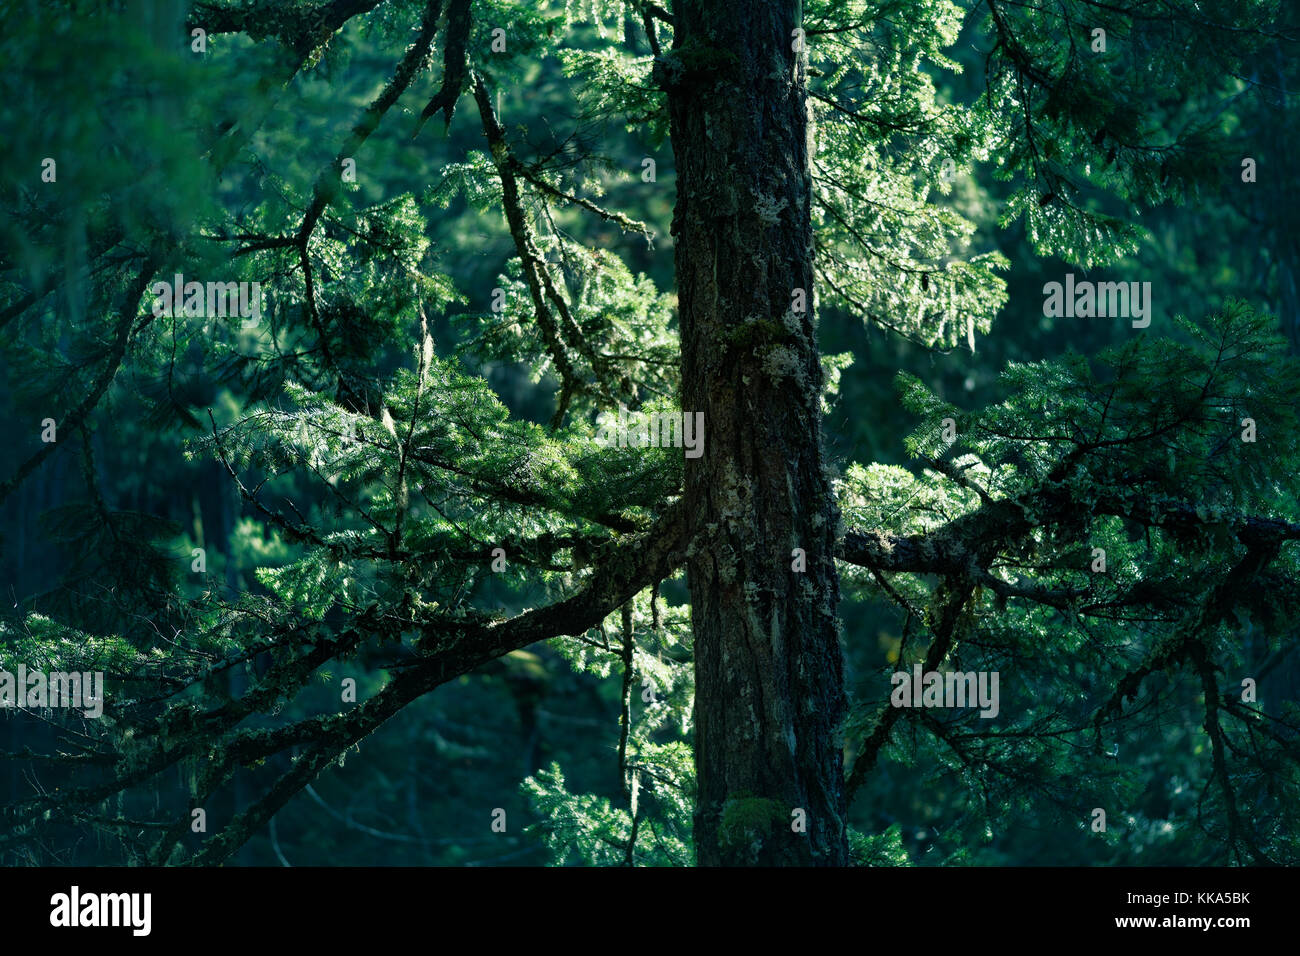 Libre de branches de sapins douglas brillants dans la lumière du soleil dans une profonde forêt verte. L'île de Vancouver, Colombie-Britannique, Canada. Banque D'Images